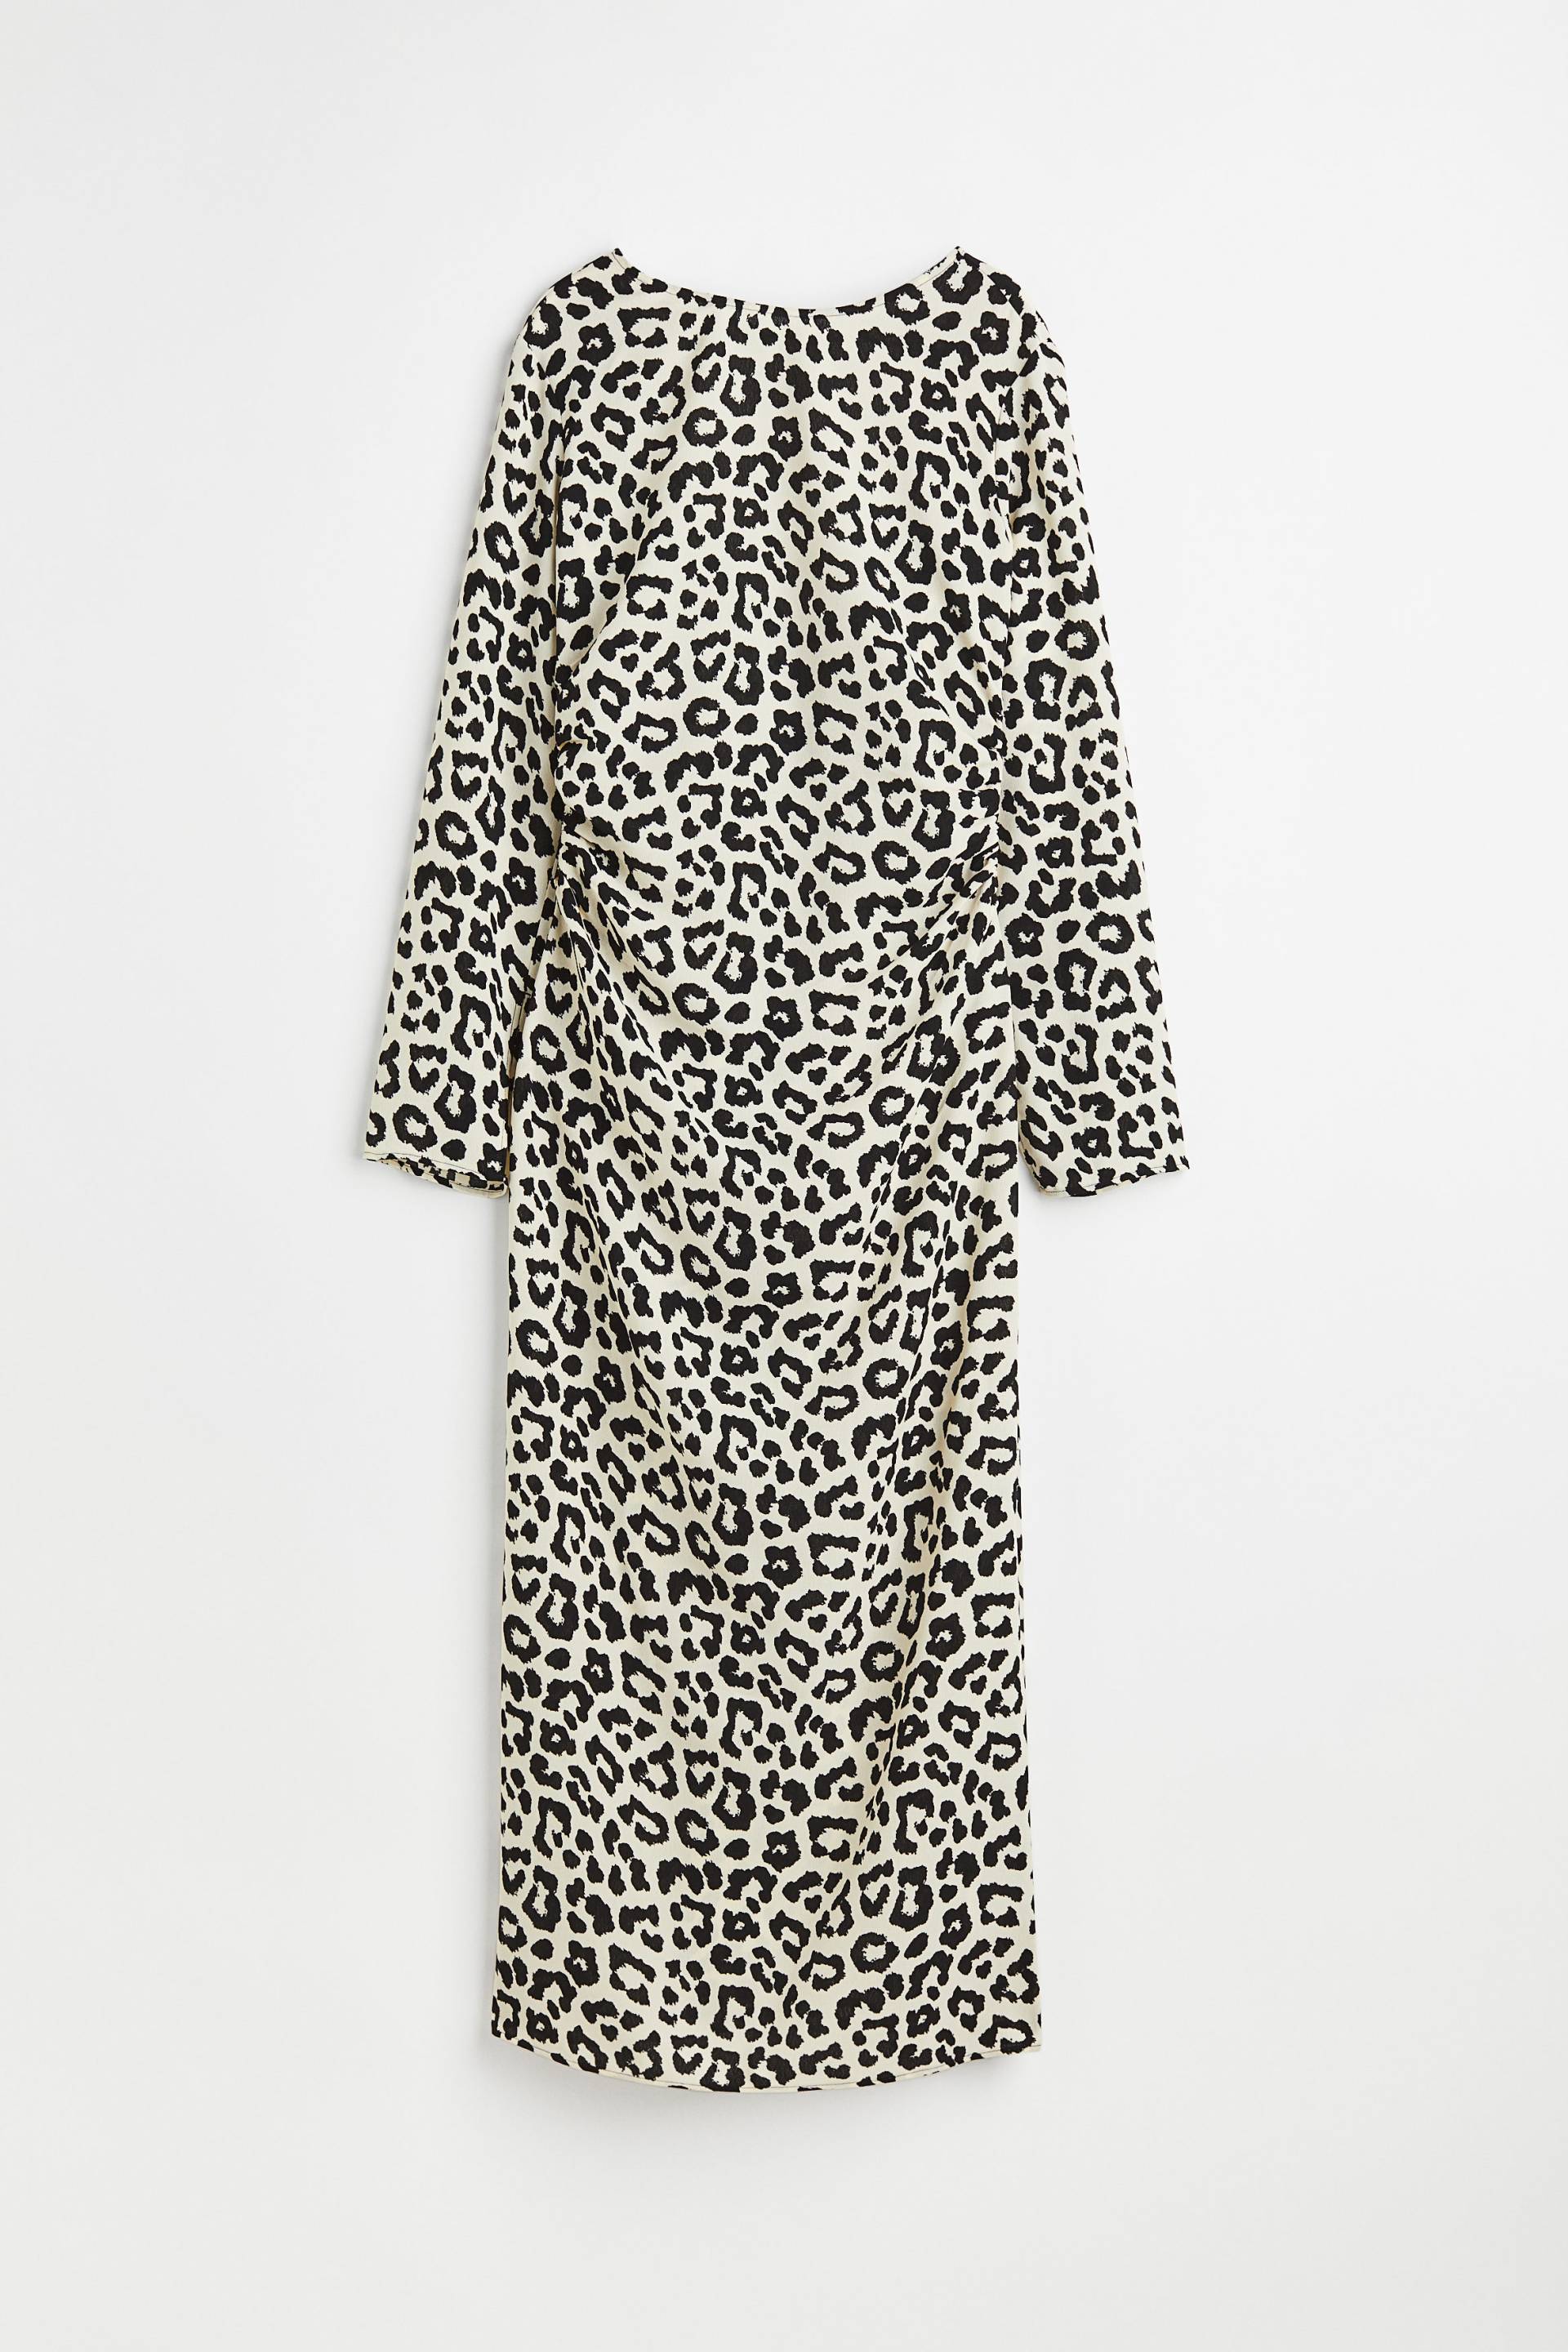 H&M Gemustertes Kleid Weiß/Leopardenmuster, Alltagskleider in Größe 32. Farbe: White/leopard print von H&M